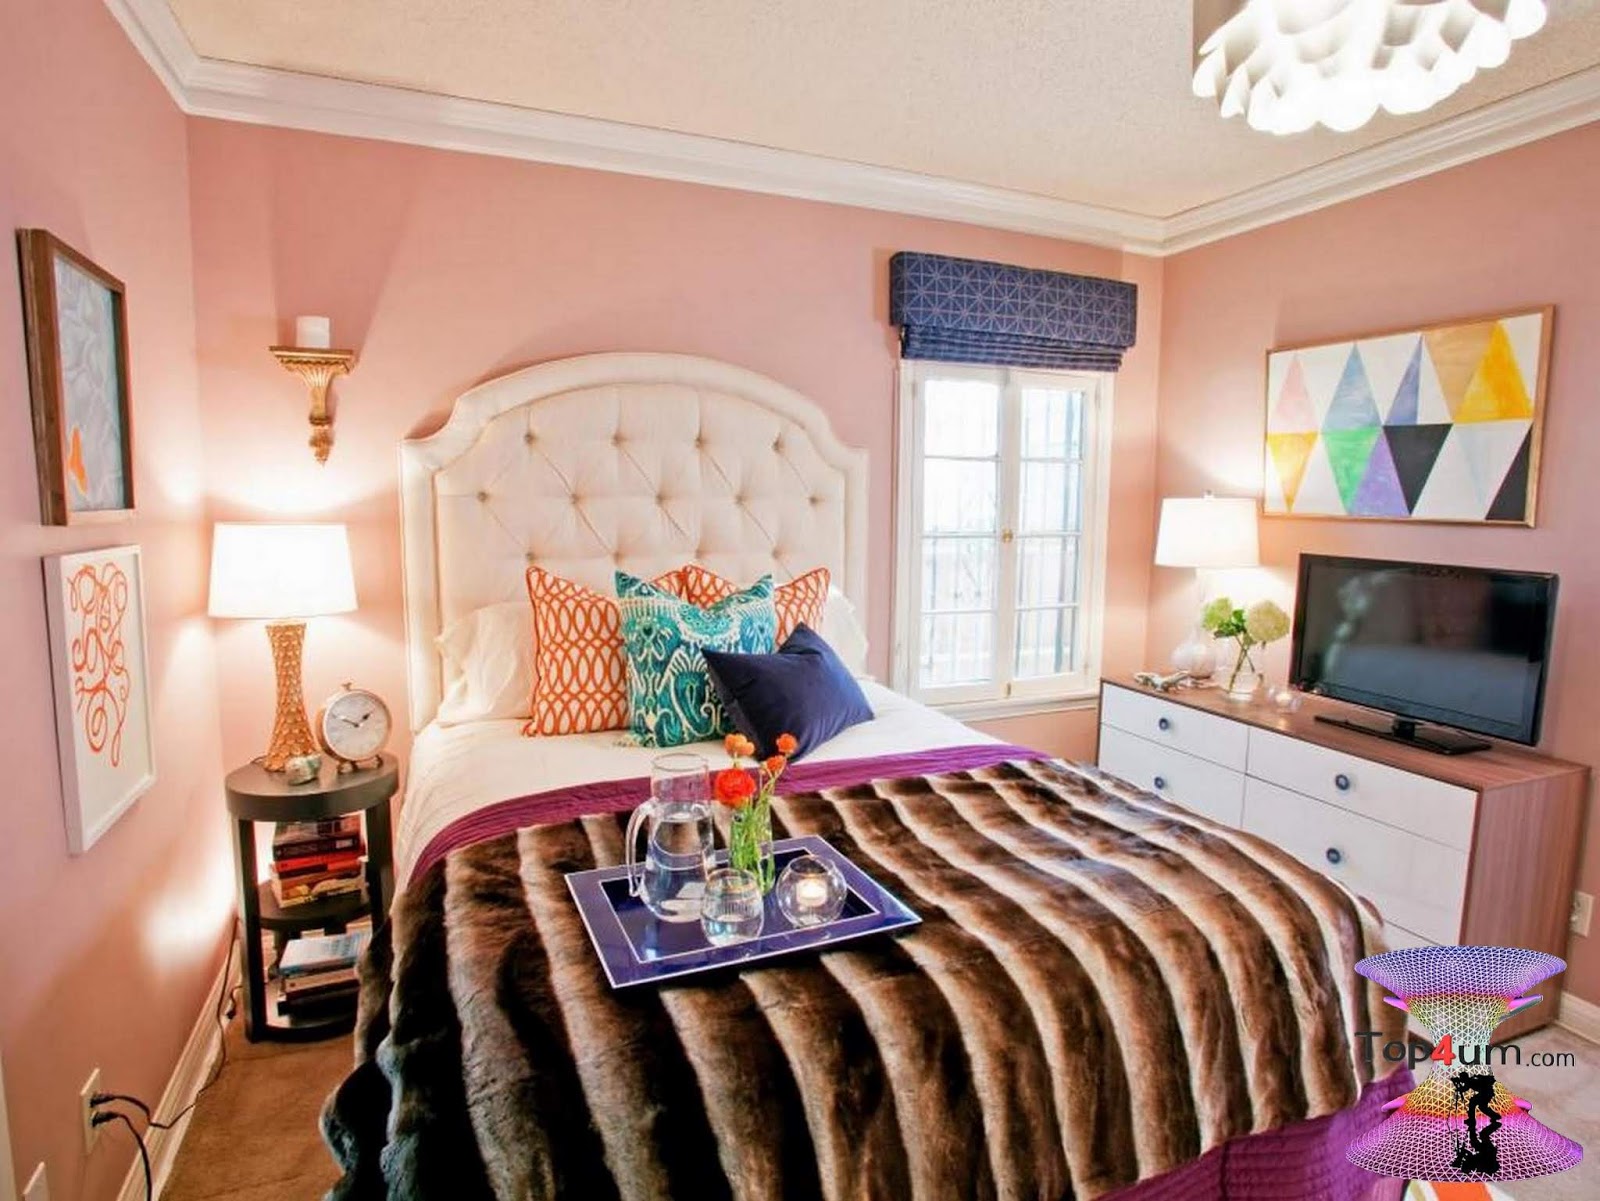 My perfect room. Спальня в персиковых тонах. Спальня в персиковом цвете. Сочетание персикового в интерьере. Цветовые сочетания в интерьере спальни.